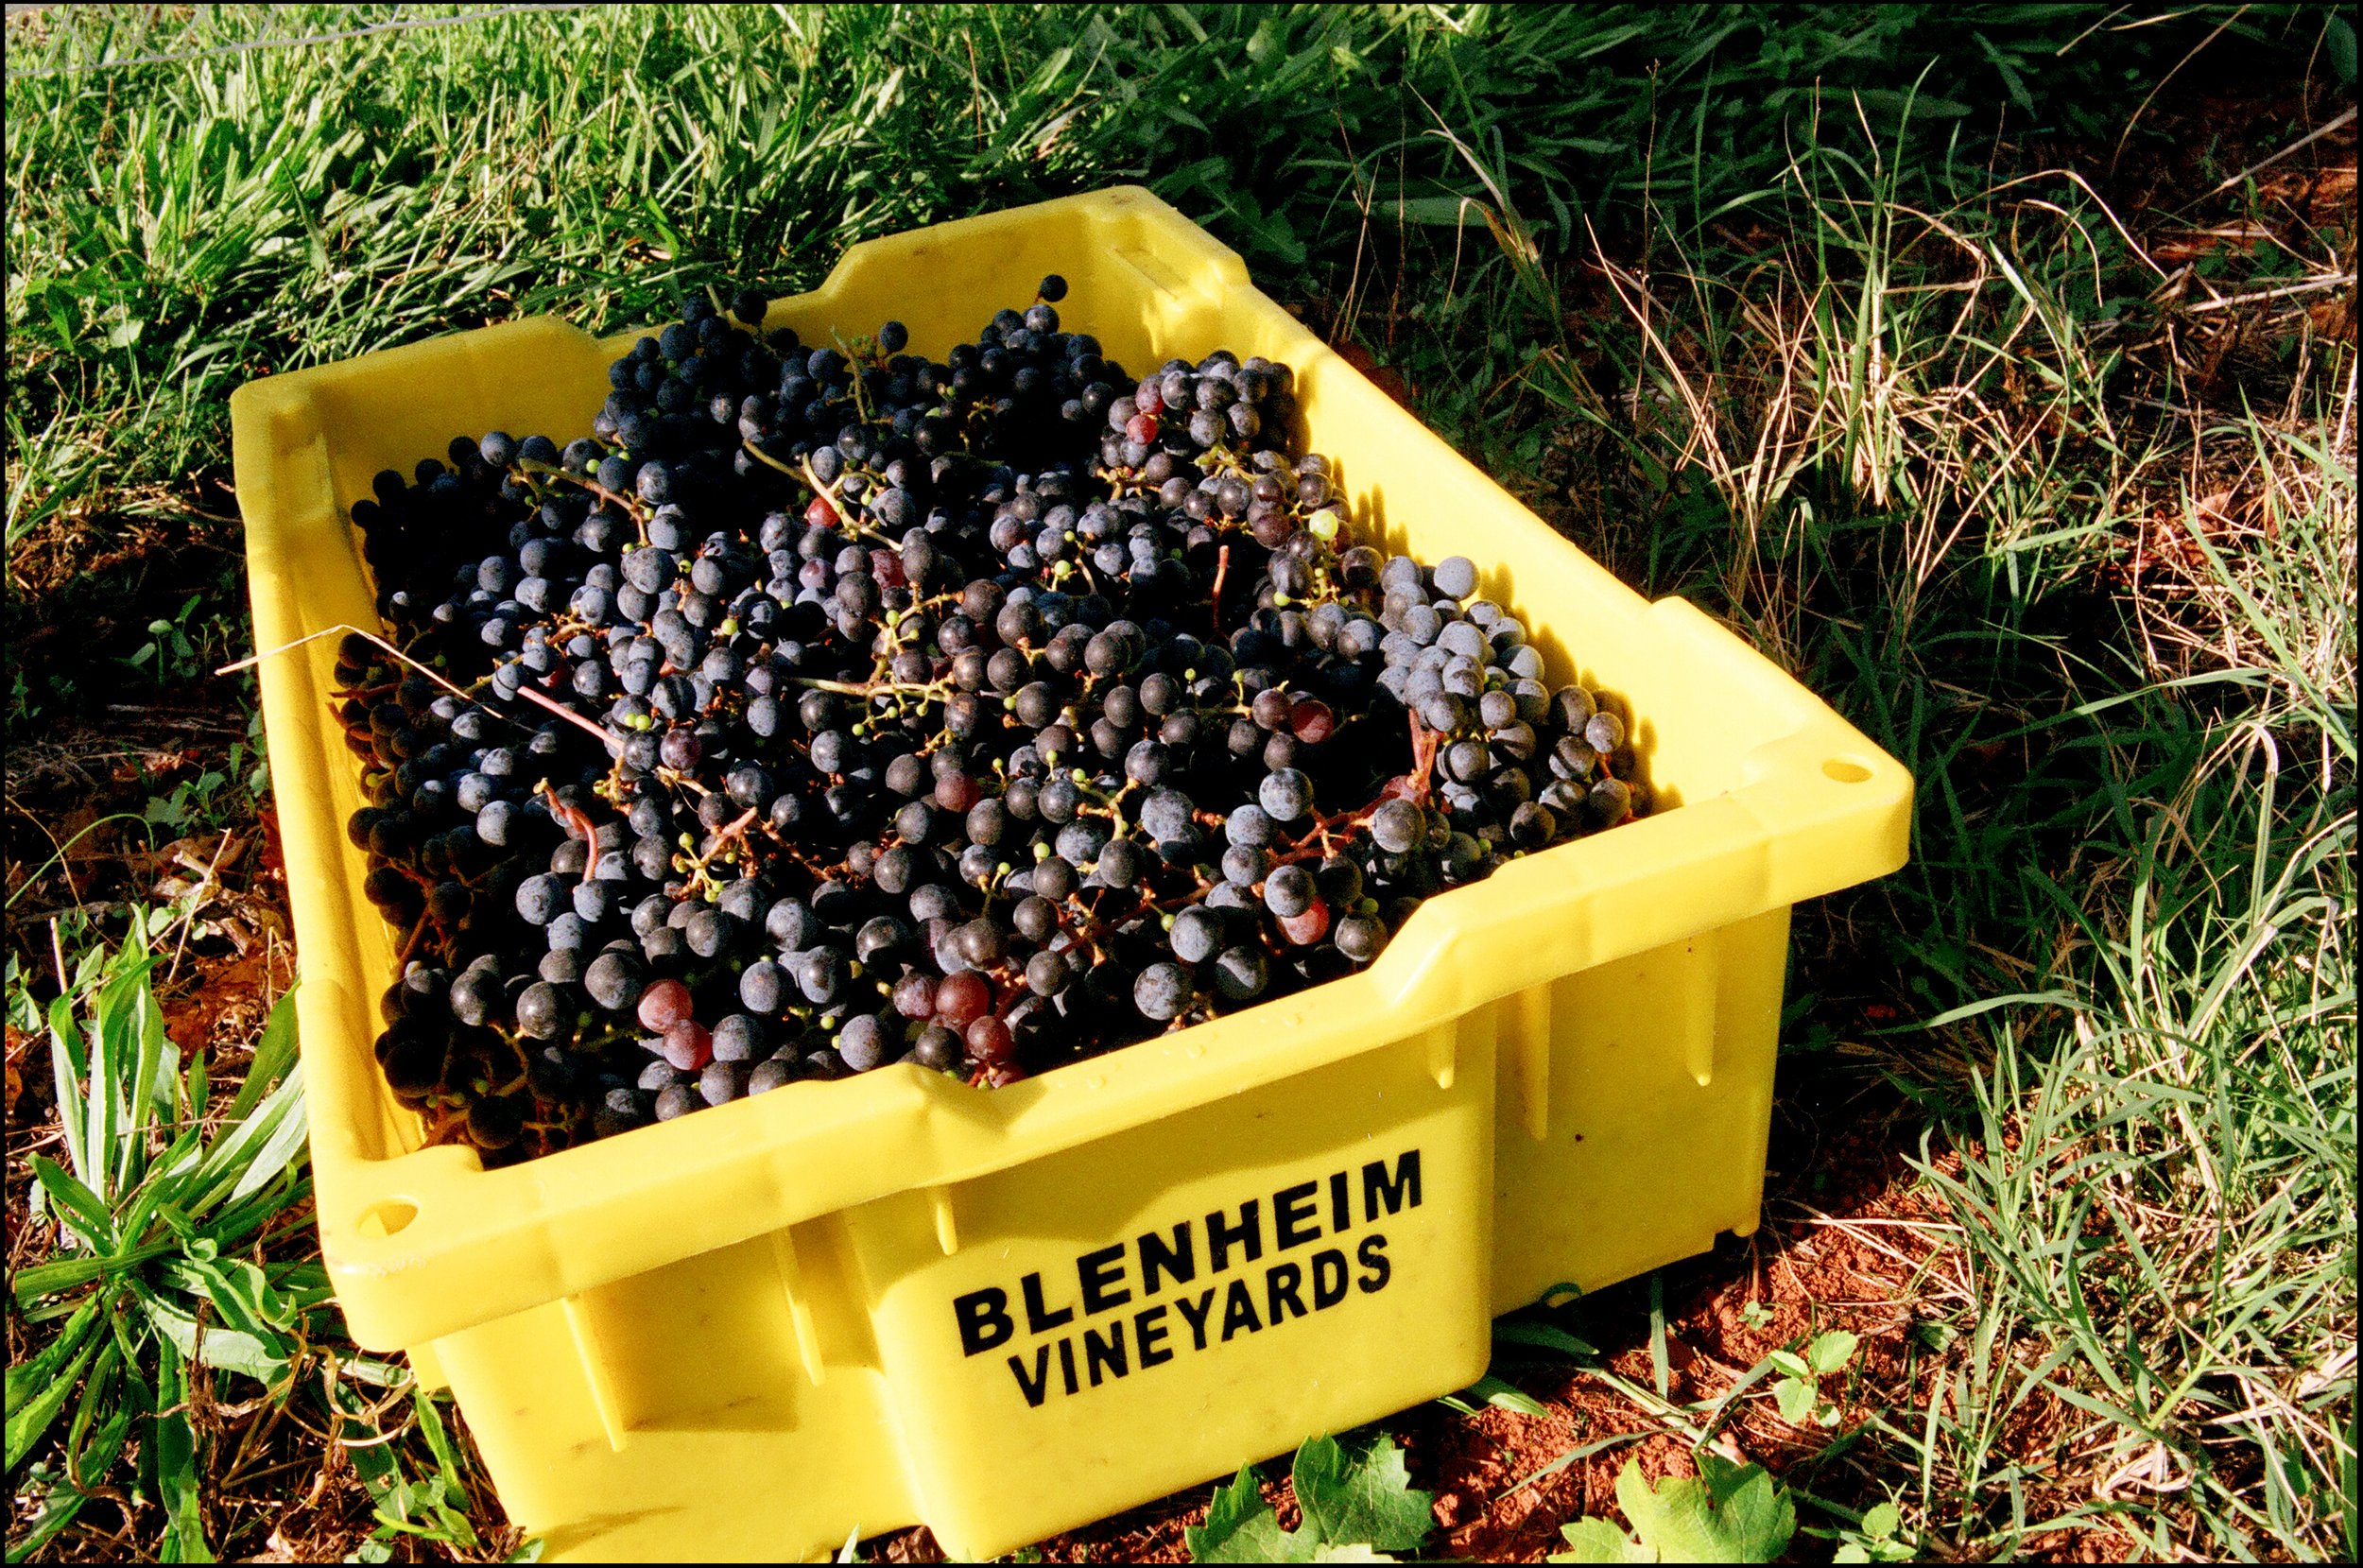 Blenheim Vineyards - Products - 2021 Painted Series Tee